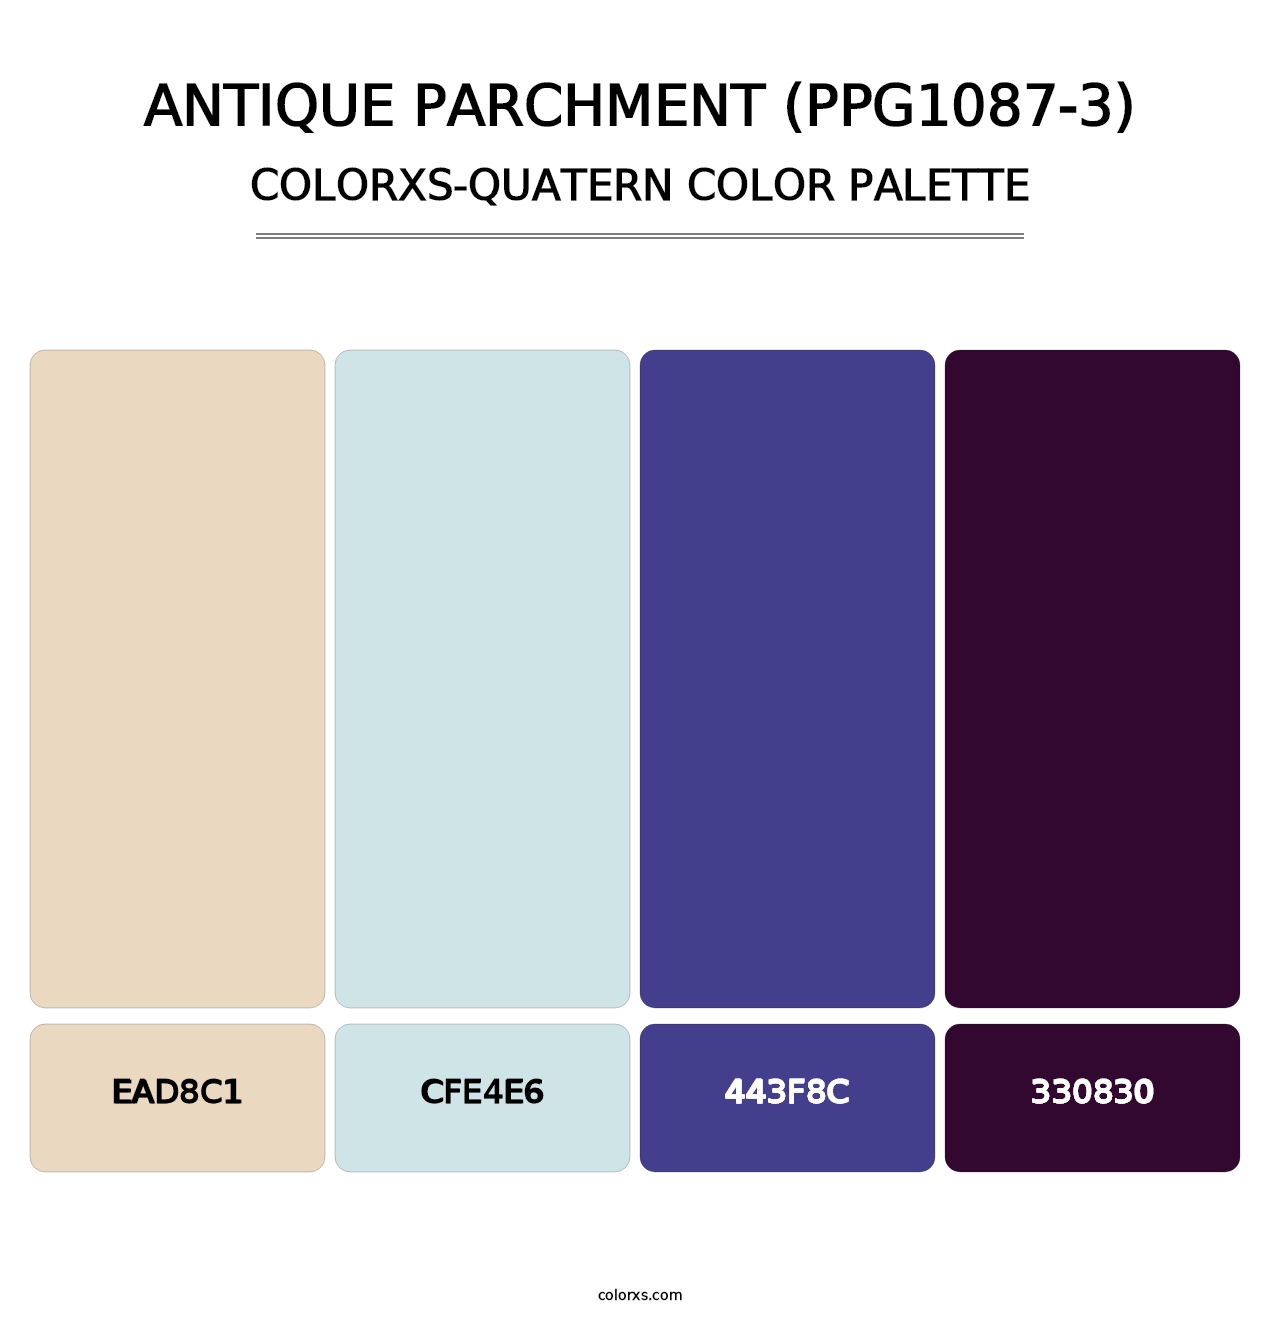 Antique Parchment (PPG1087-3) - Colorxs Quatern Palette